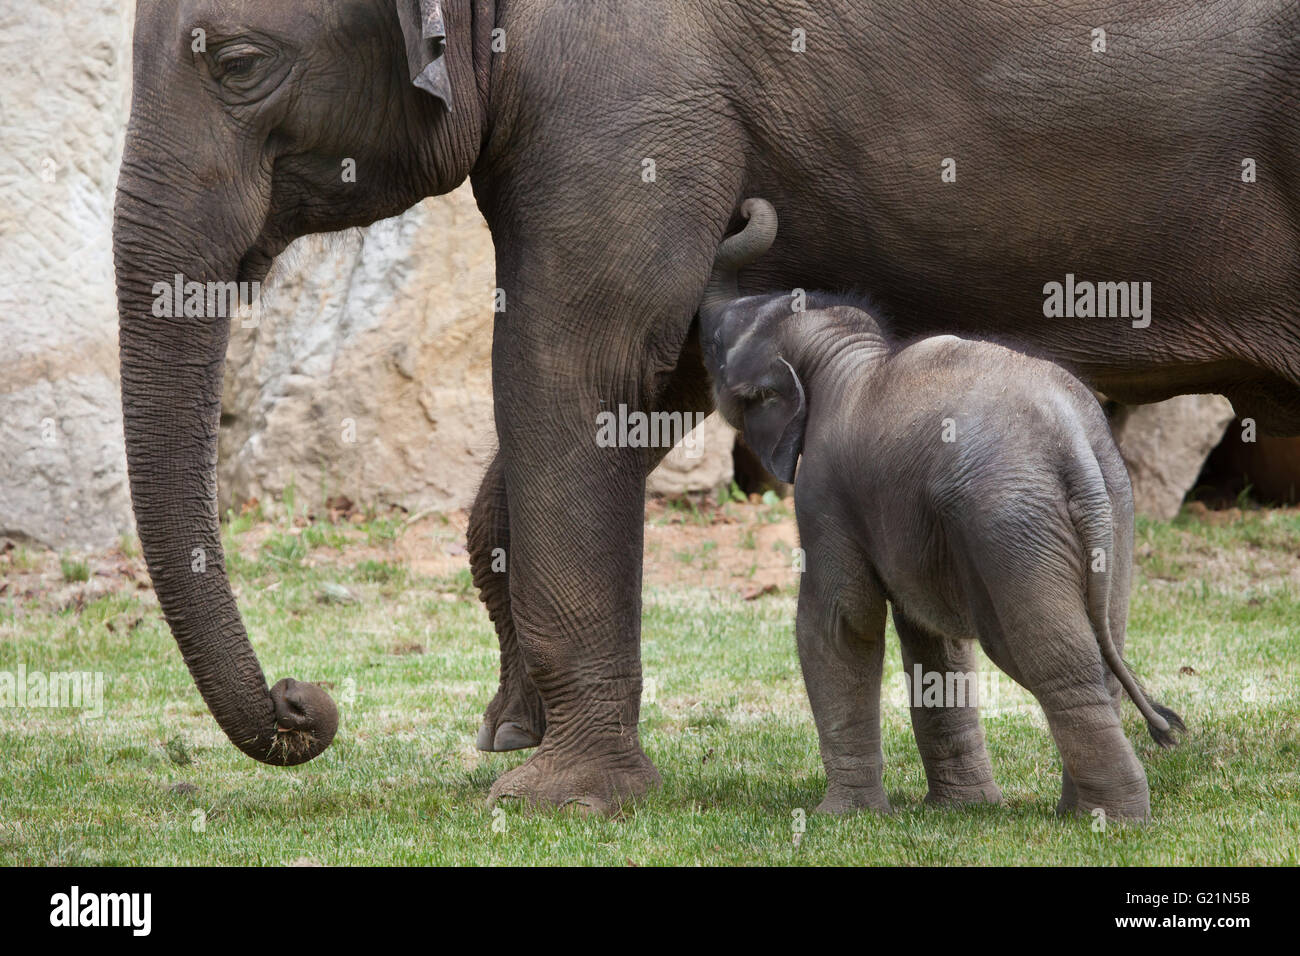 Uno mese-vecchio elefante indiano (Elephas maximus indicus) denominata Maxmilian con sua madre Janita presso lo Zoo di Praga, Repubblica Ceca. Foto Stock